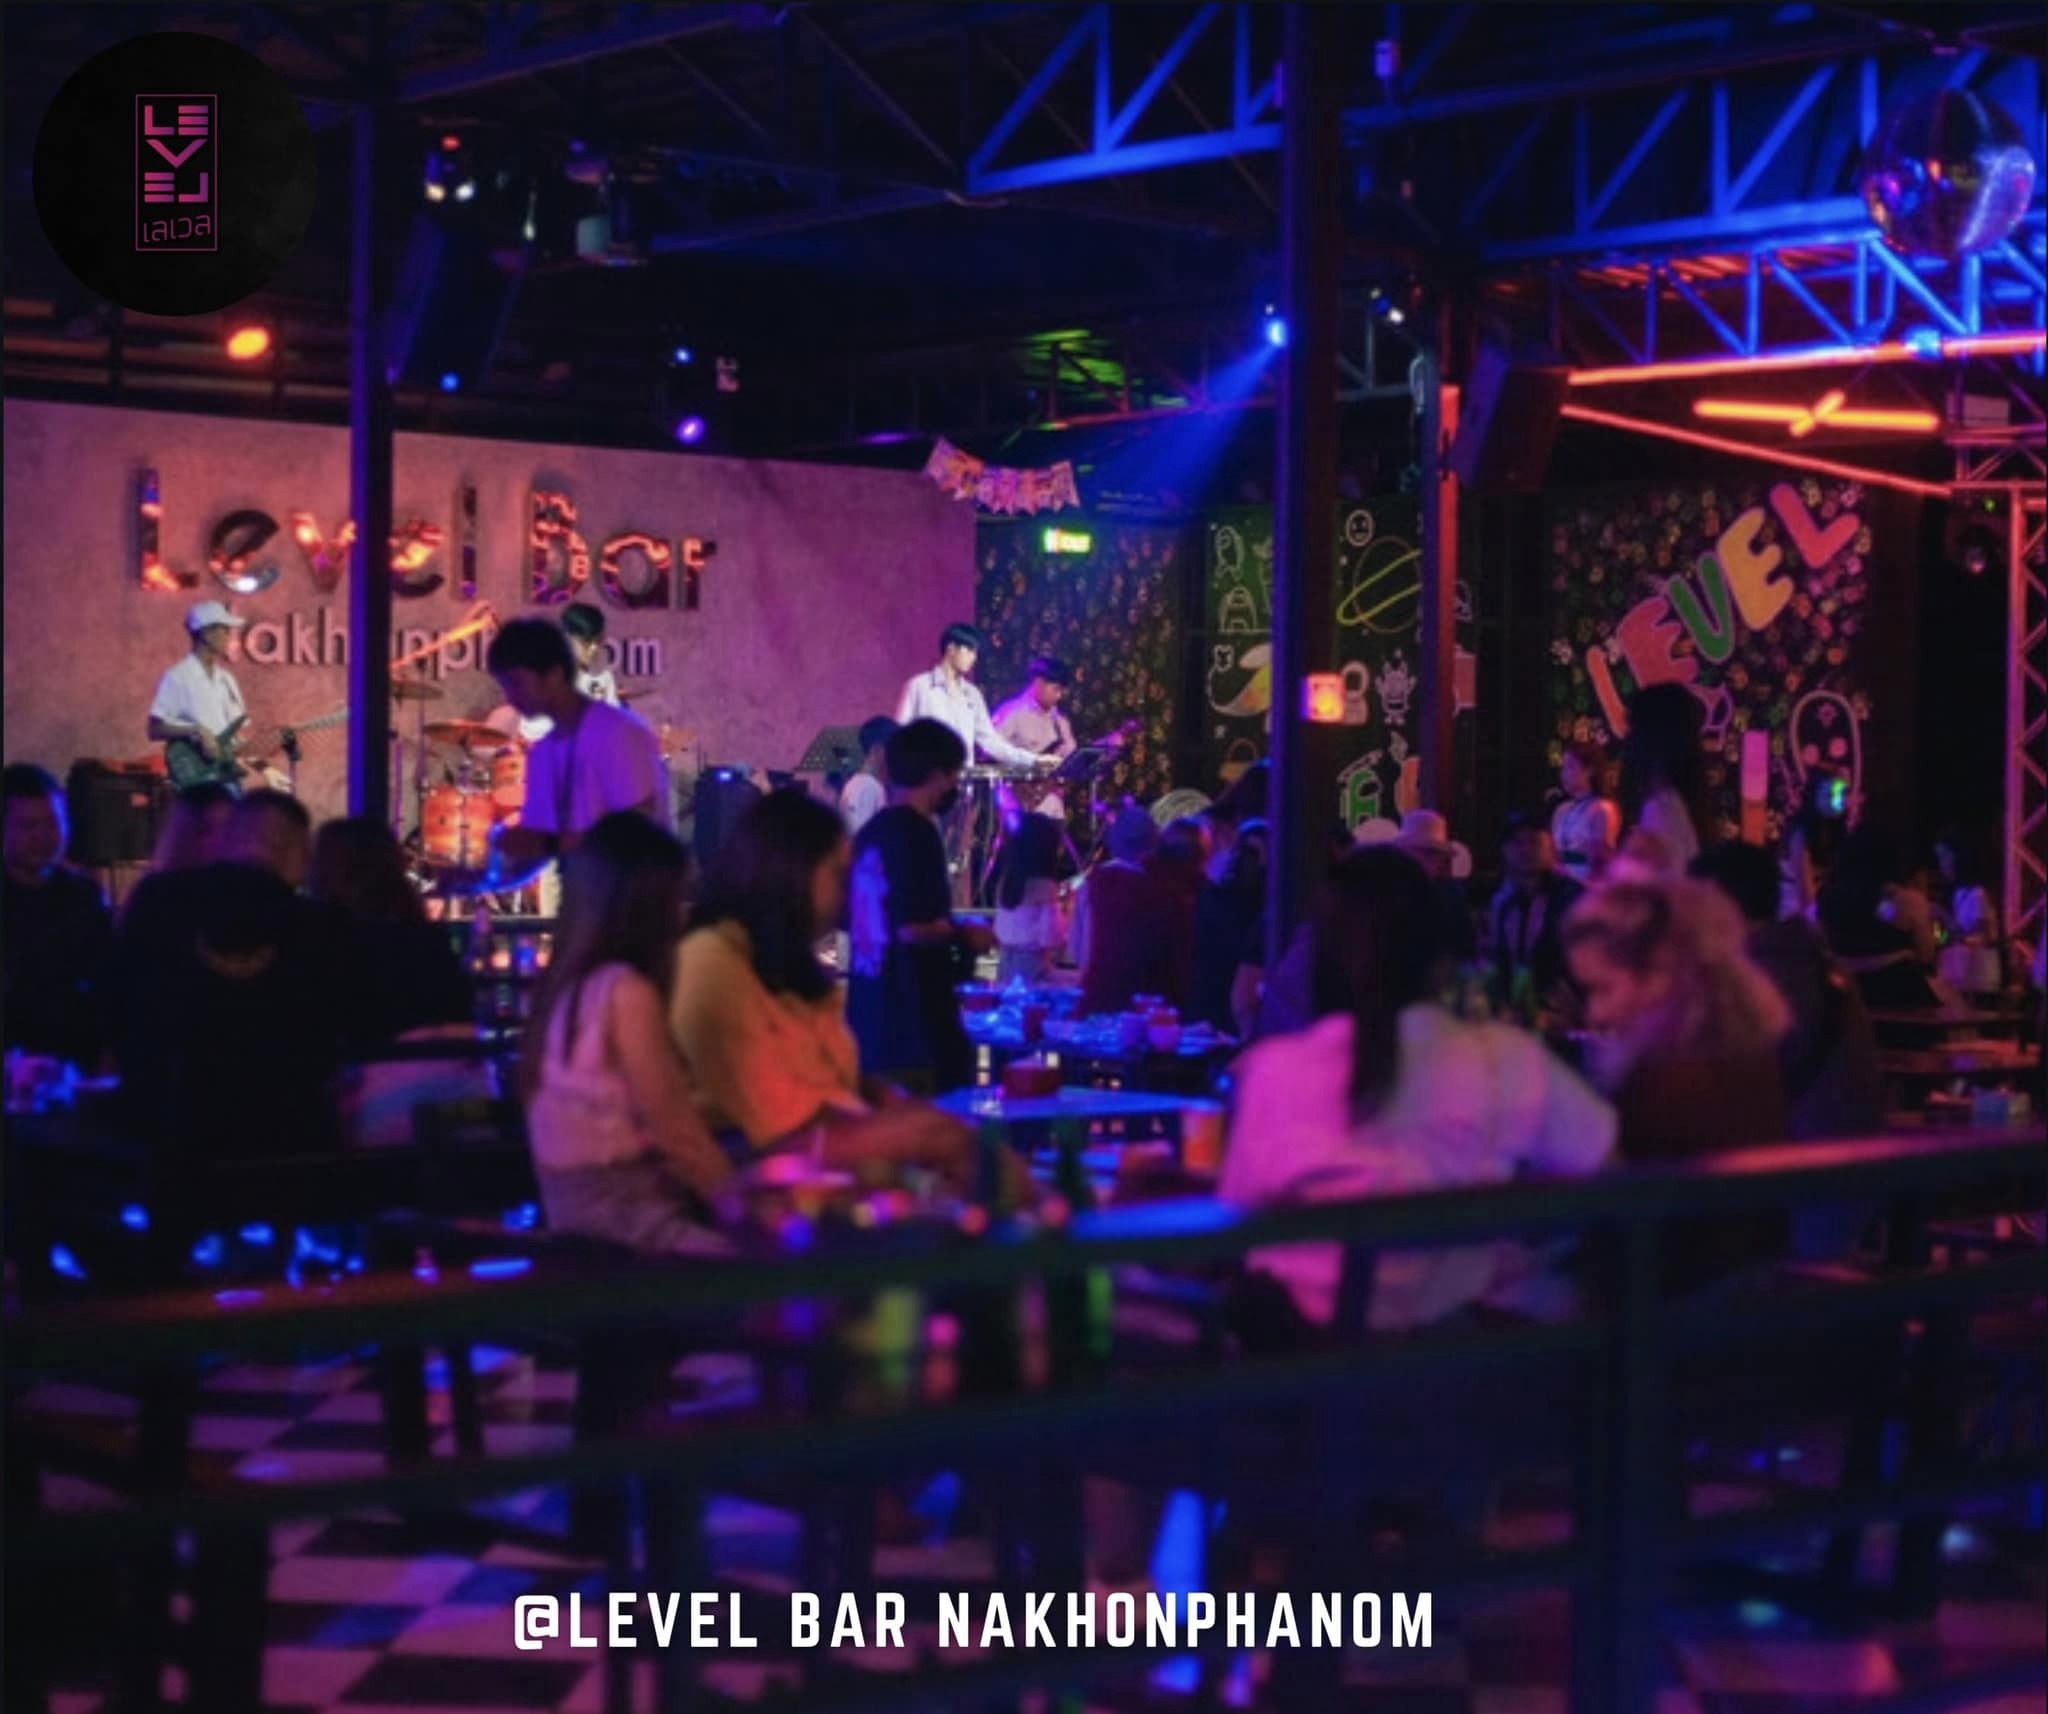 Level Bar Nakhon Phanom (Level Bar Nakhon Phanom) : นครพนม (Nakhon Phanom)